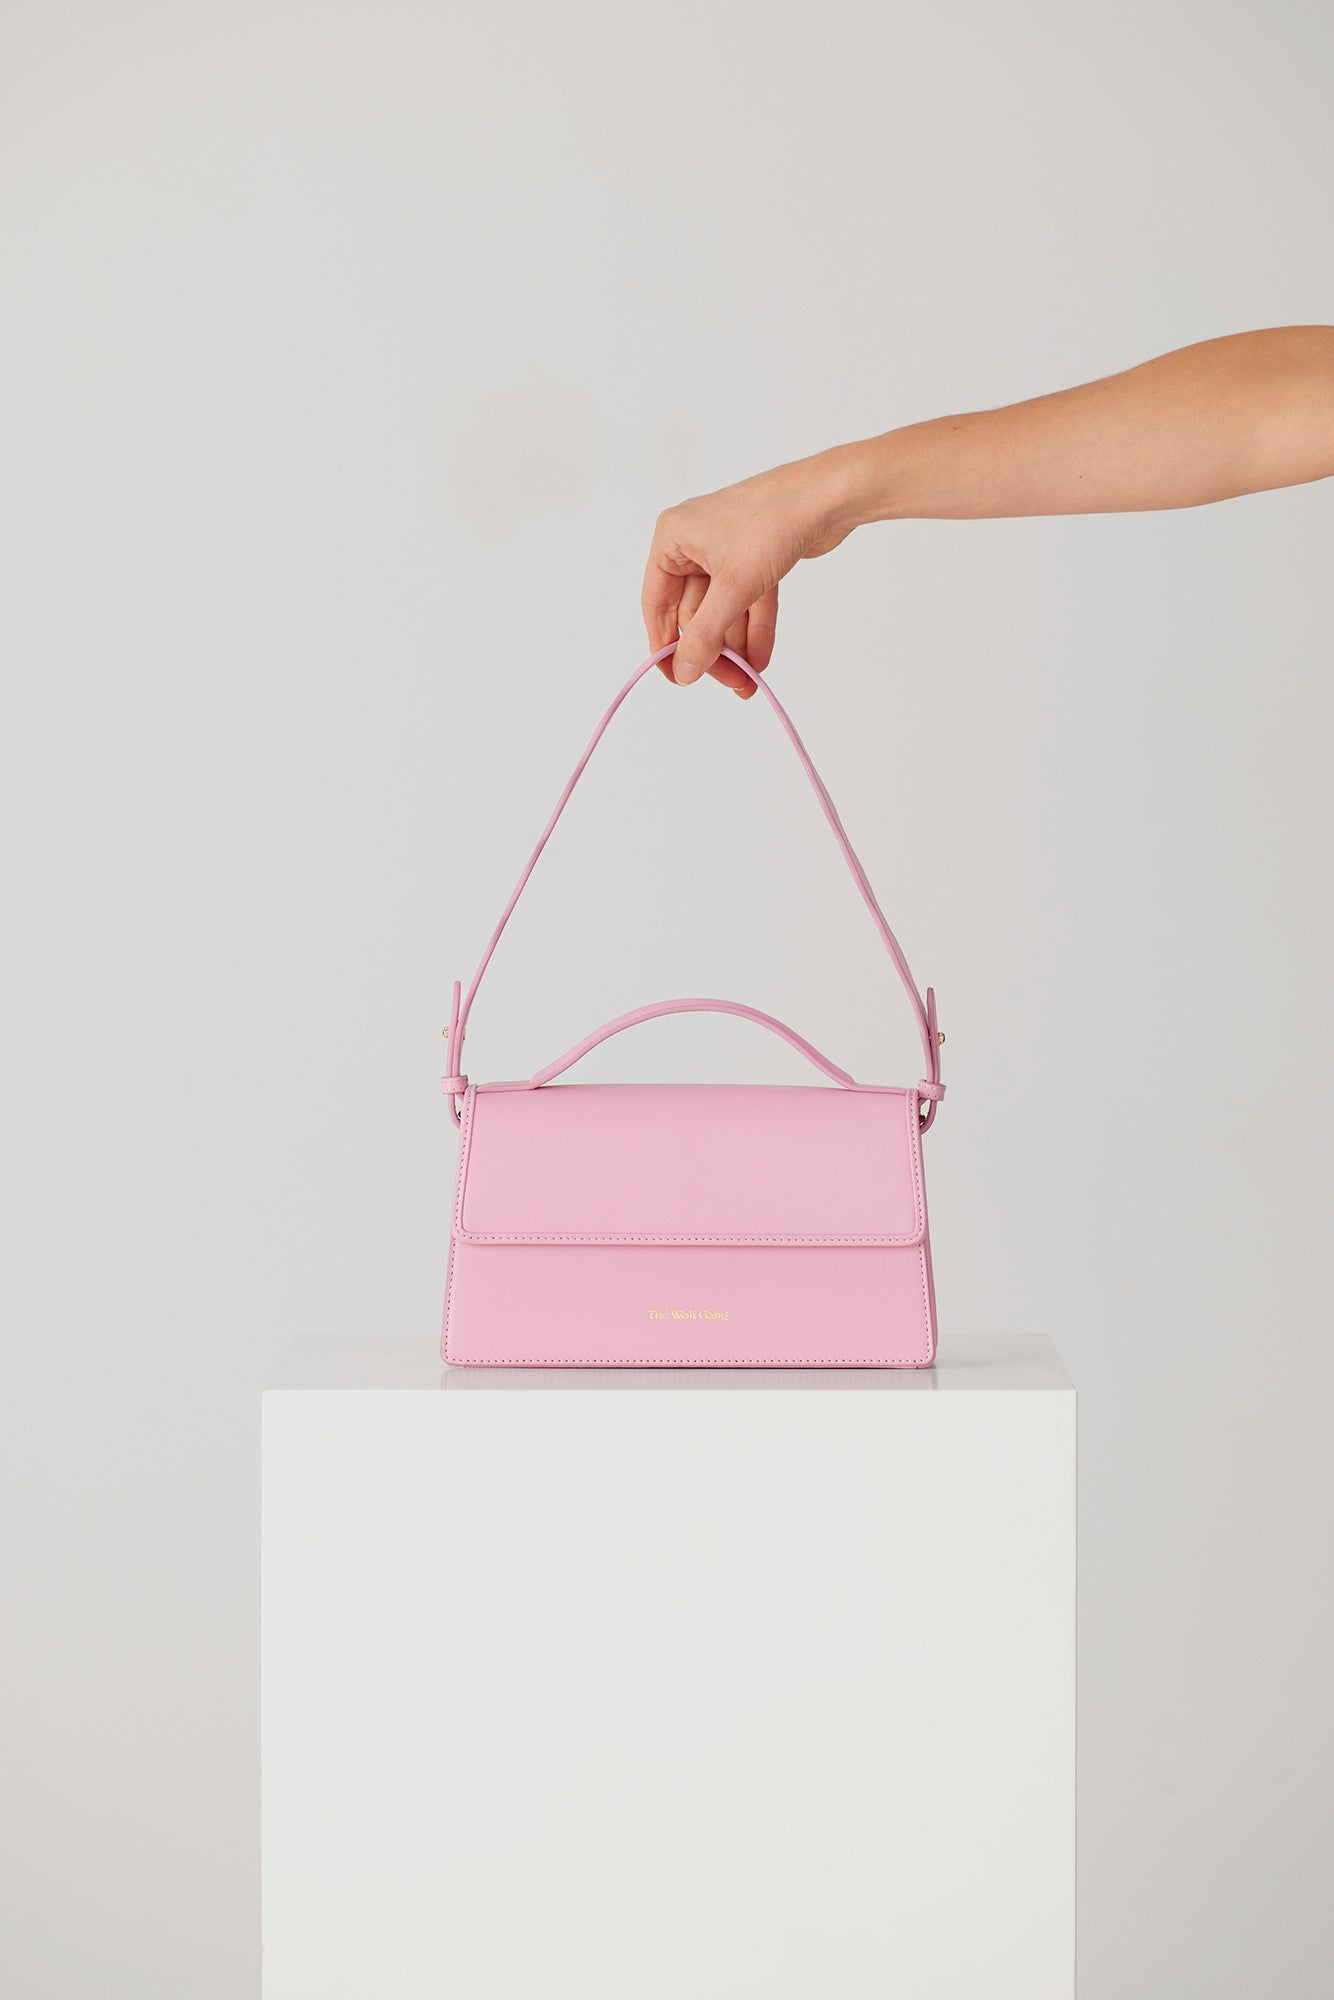 La Onda Shoulder Bag // Candy